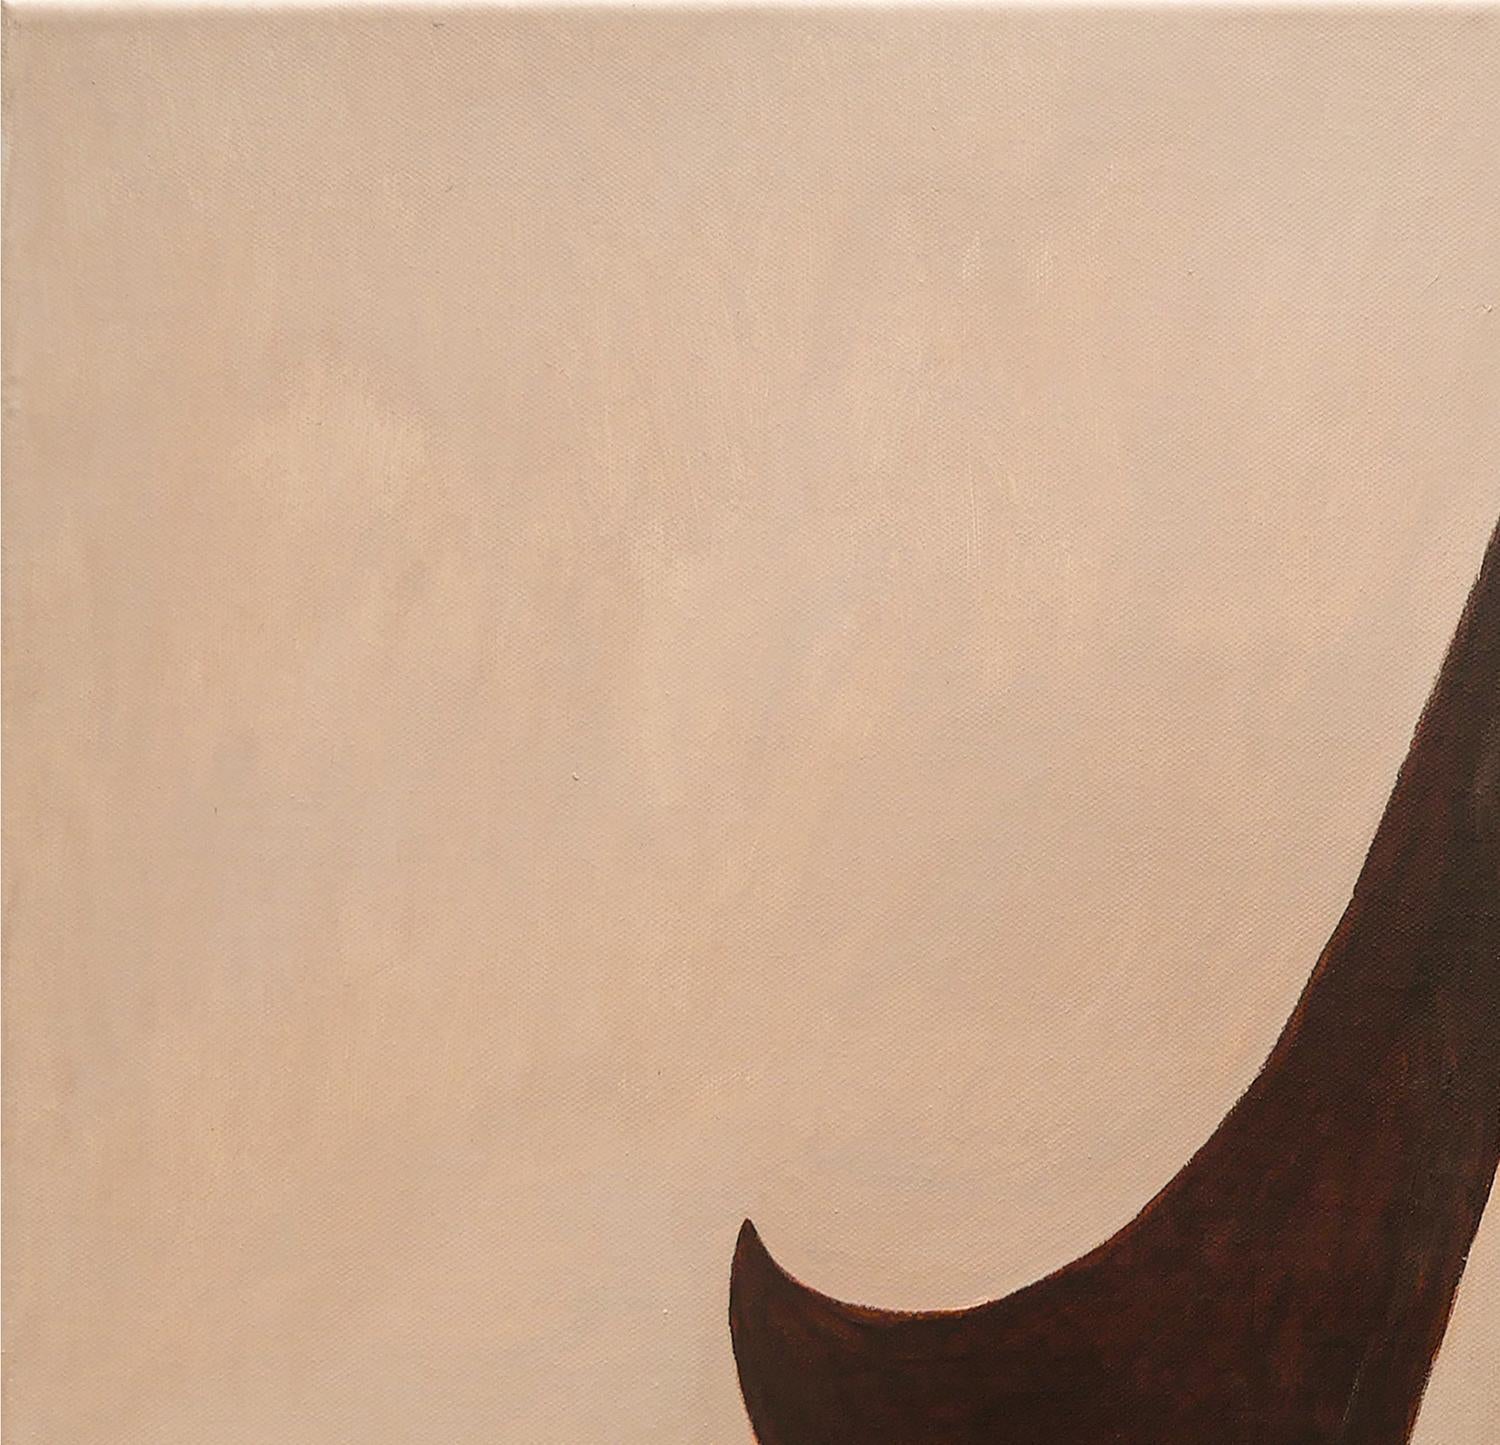 Peinture abstraite figurative surréaliste de couleur marron / sépia de l'artiste Scott Woodard de Houston, TX. Le tableau représente un personnage aux cheveux longs sur un fond minimaliste serein avec un chat. Signé par l'artiste en bas à droite.